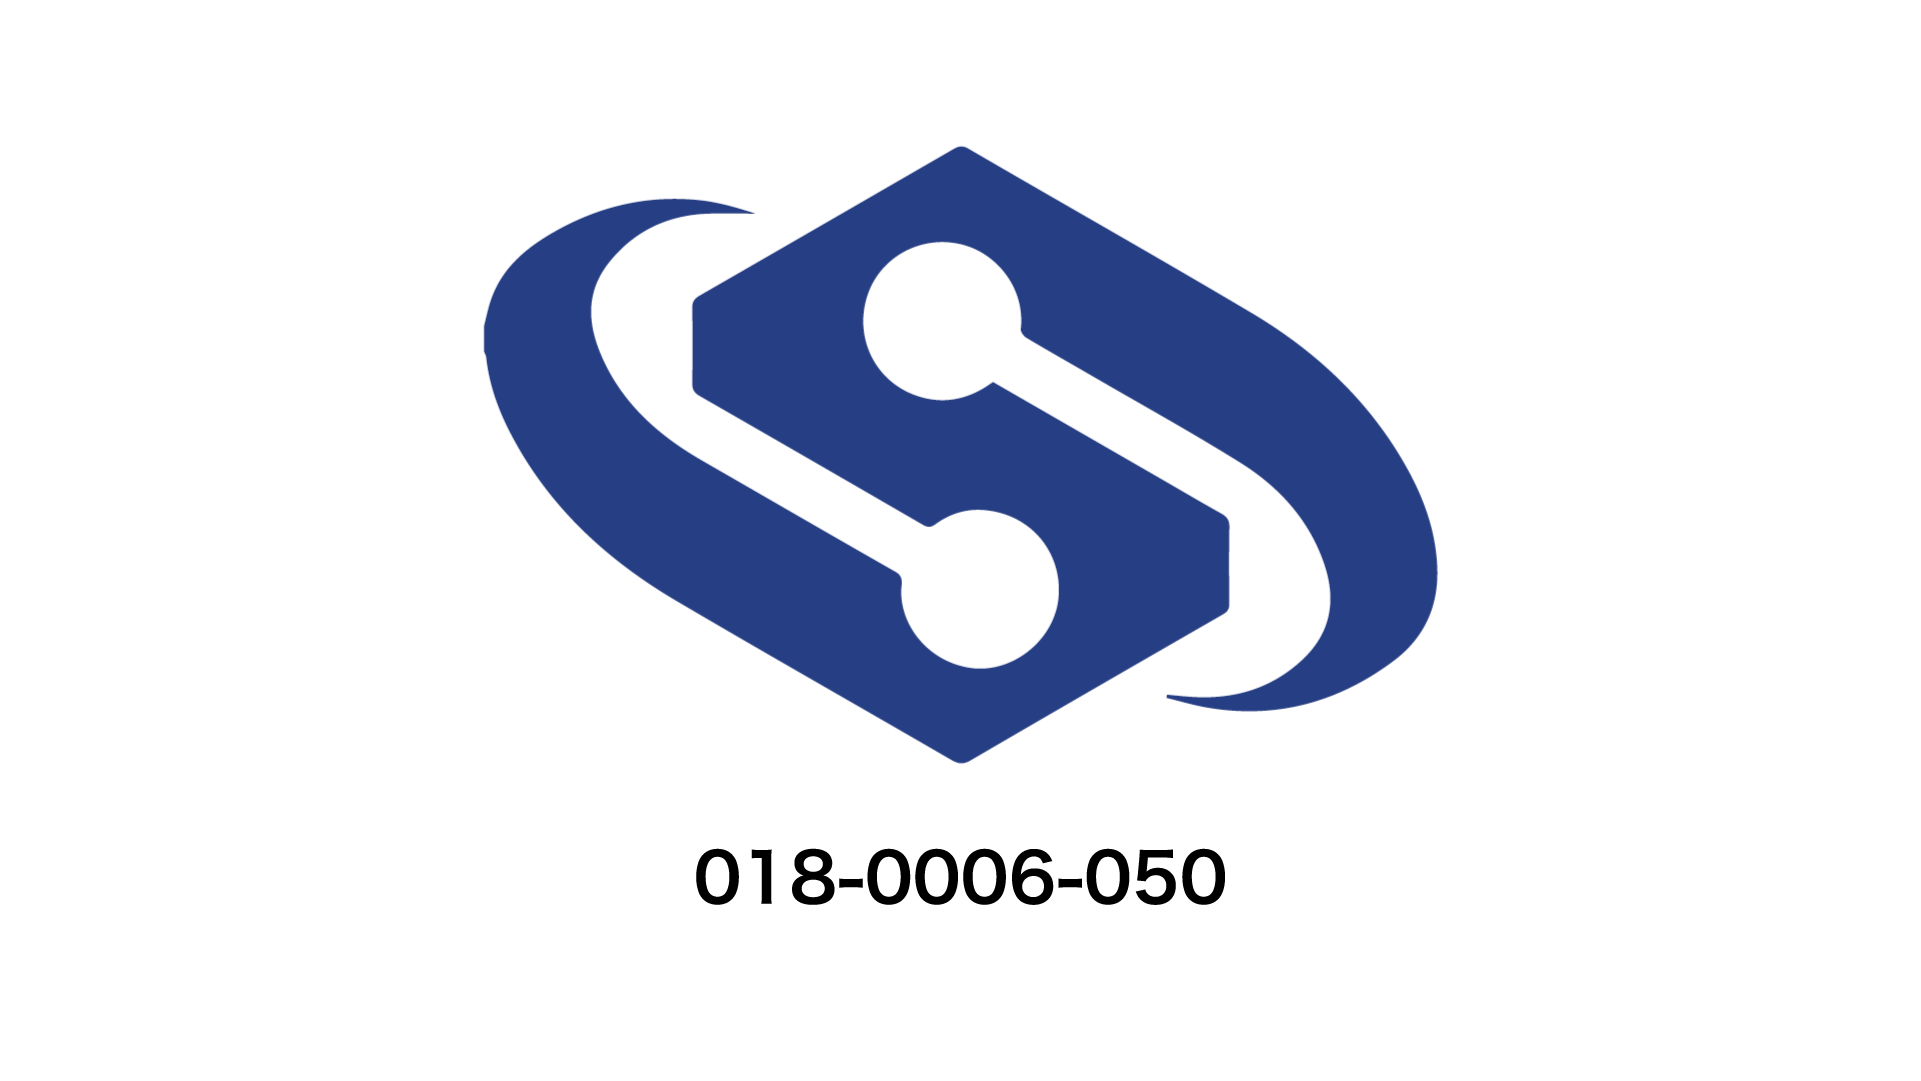 SSS_logo_assessment_1920_2.png